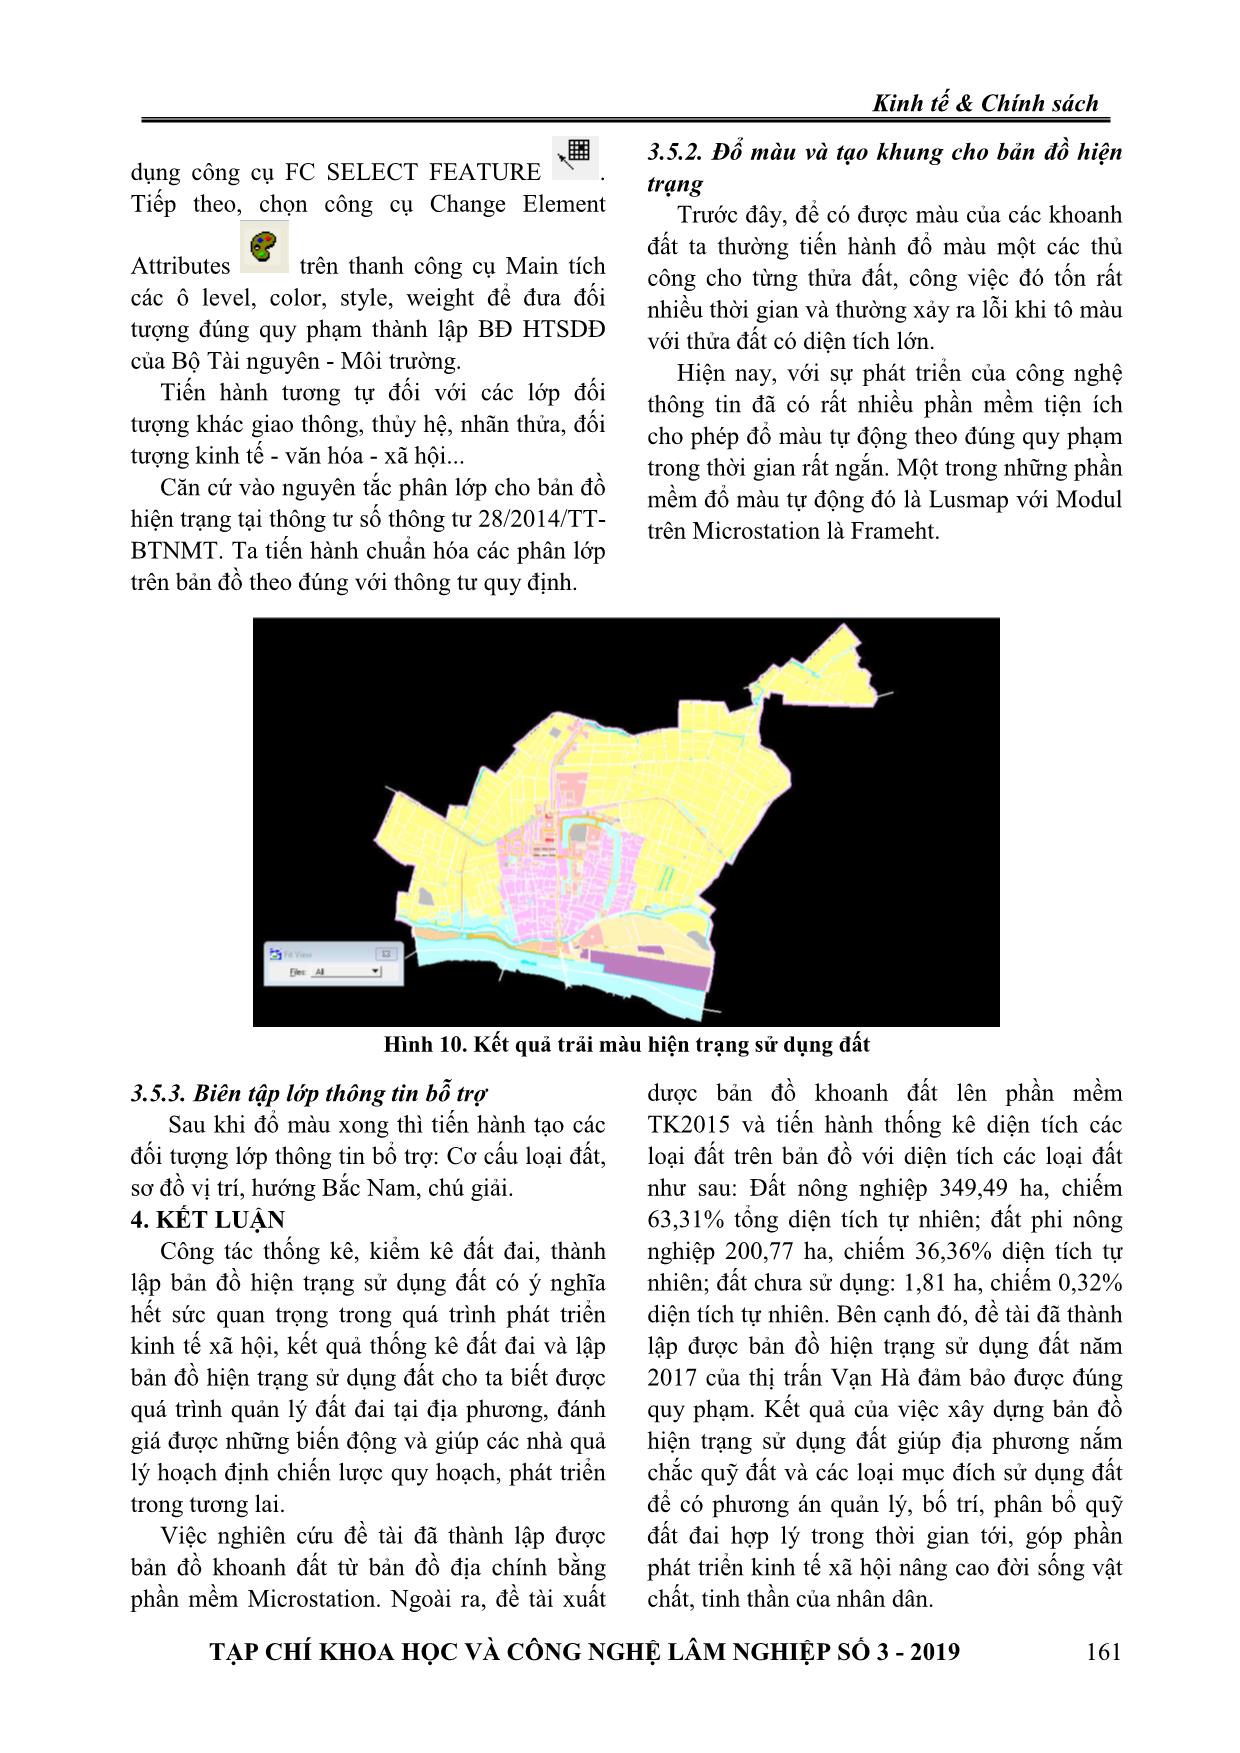 Thống kê đất đai và thành lập bản đồ hiện trạng sử dụng đất tại thị trấn Vạn Hà, huyện Thiệu Hóa, tỉnh Thanh Hóa trang 8